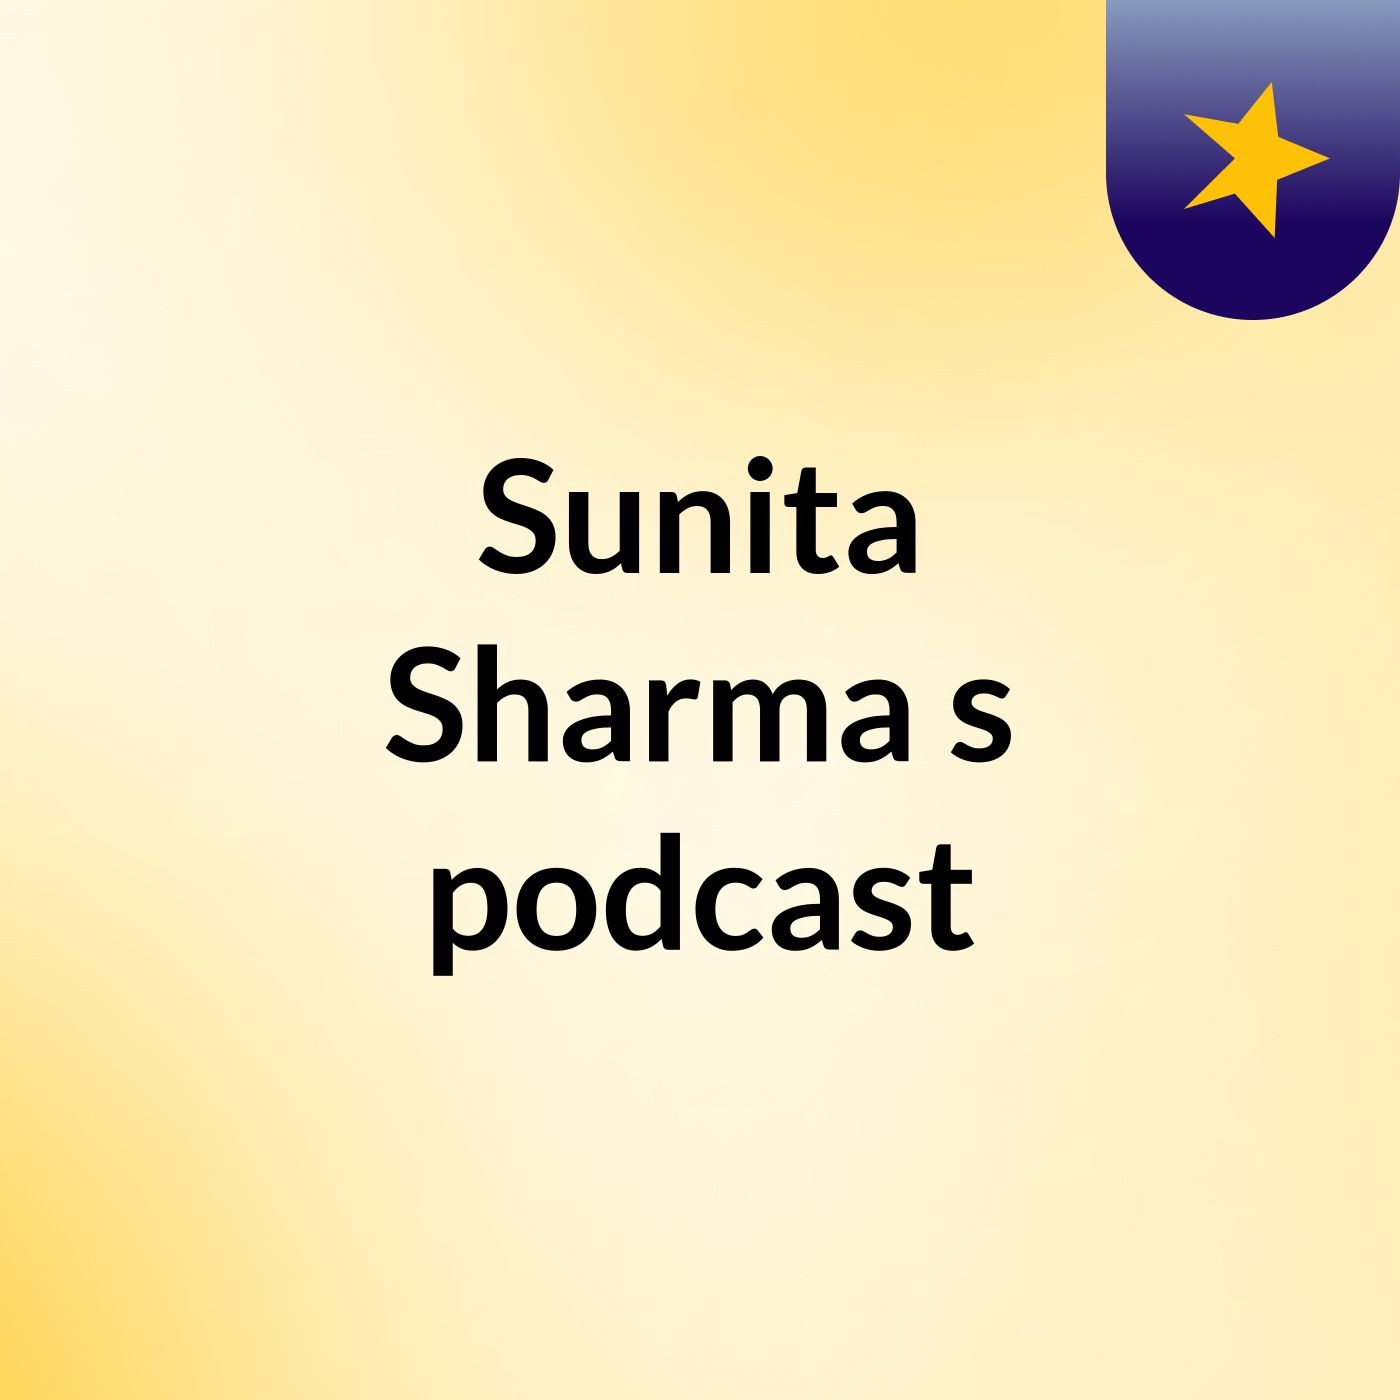 Sunita Sharma's podcast